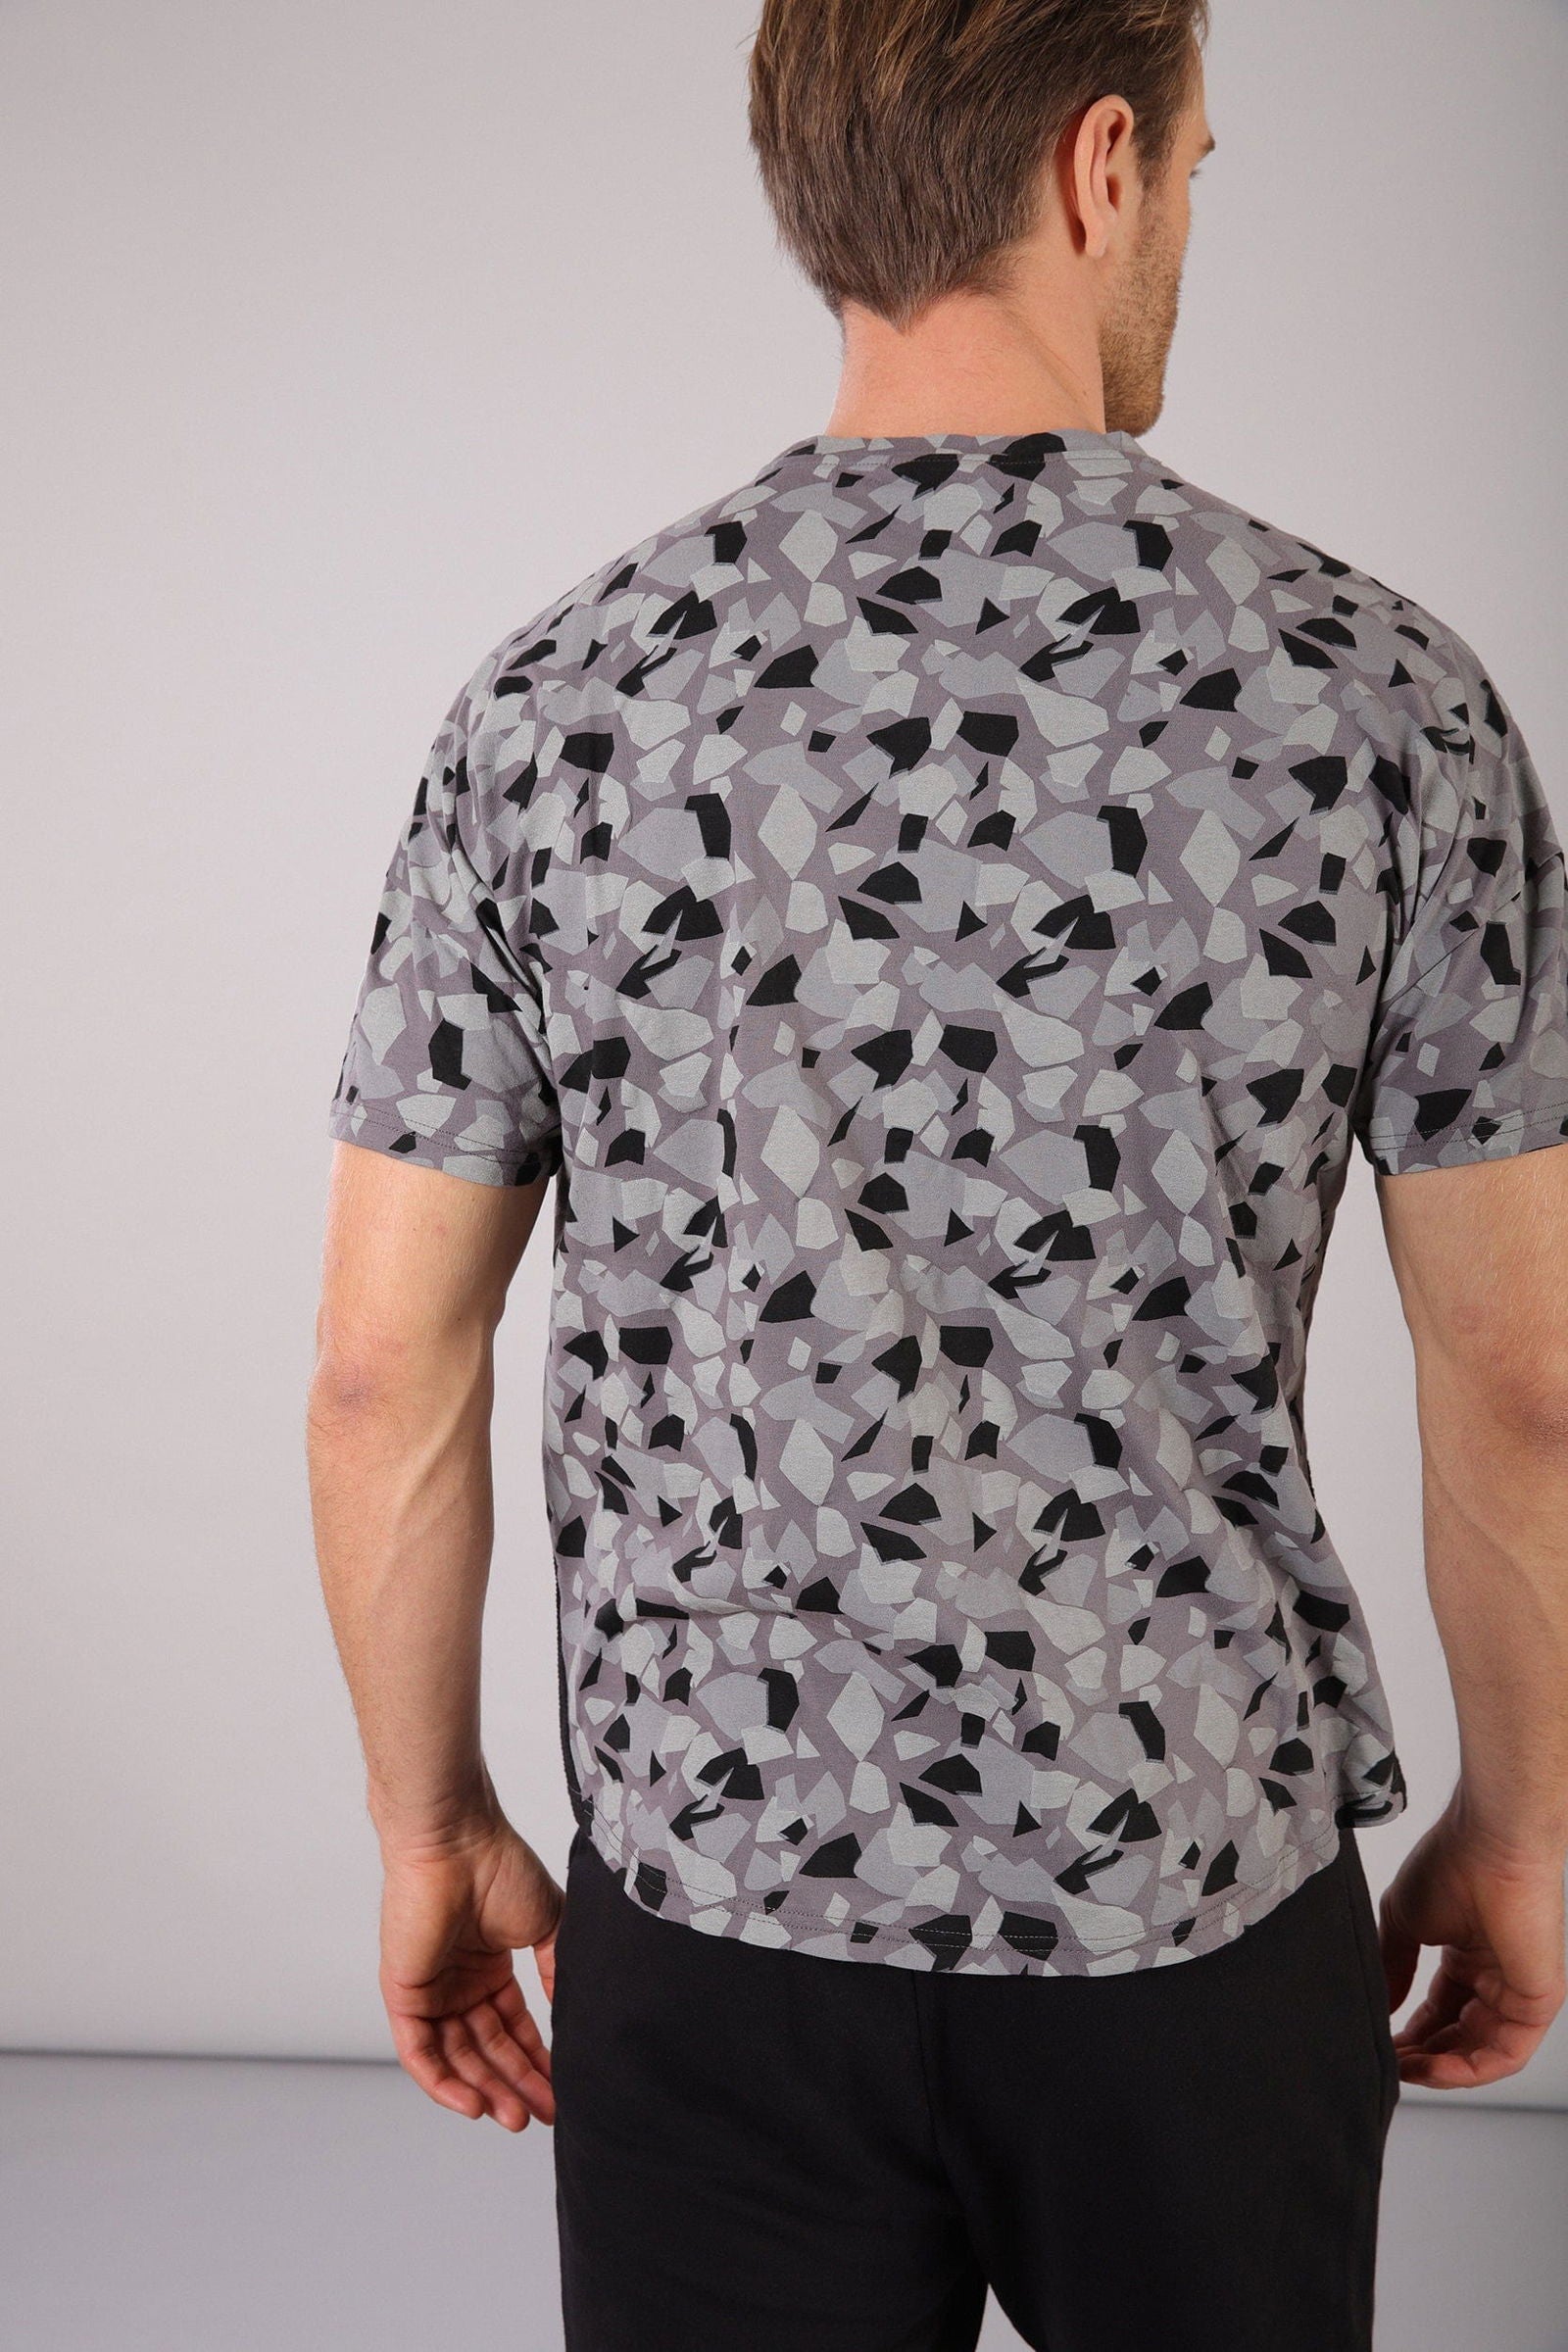 Men's T shirt - Geometric 3